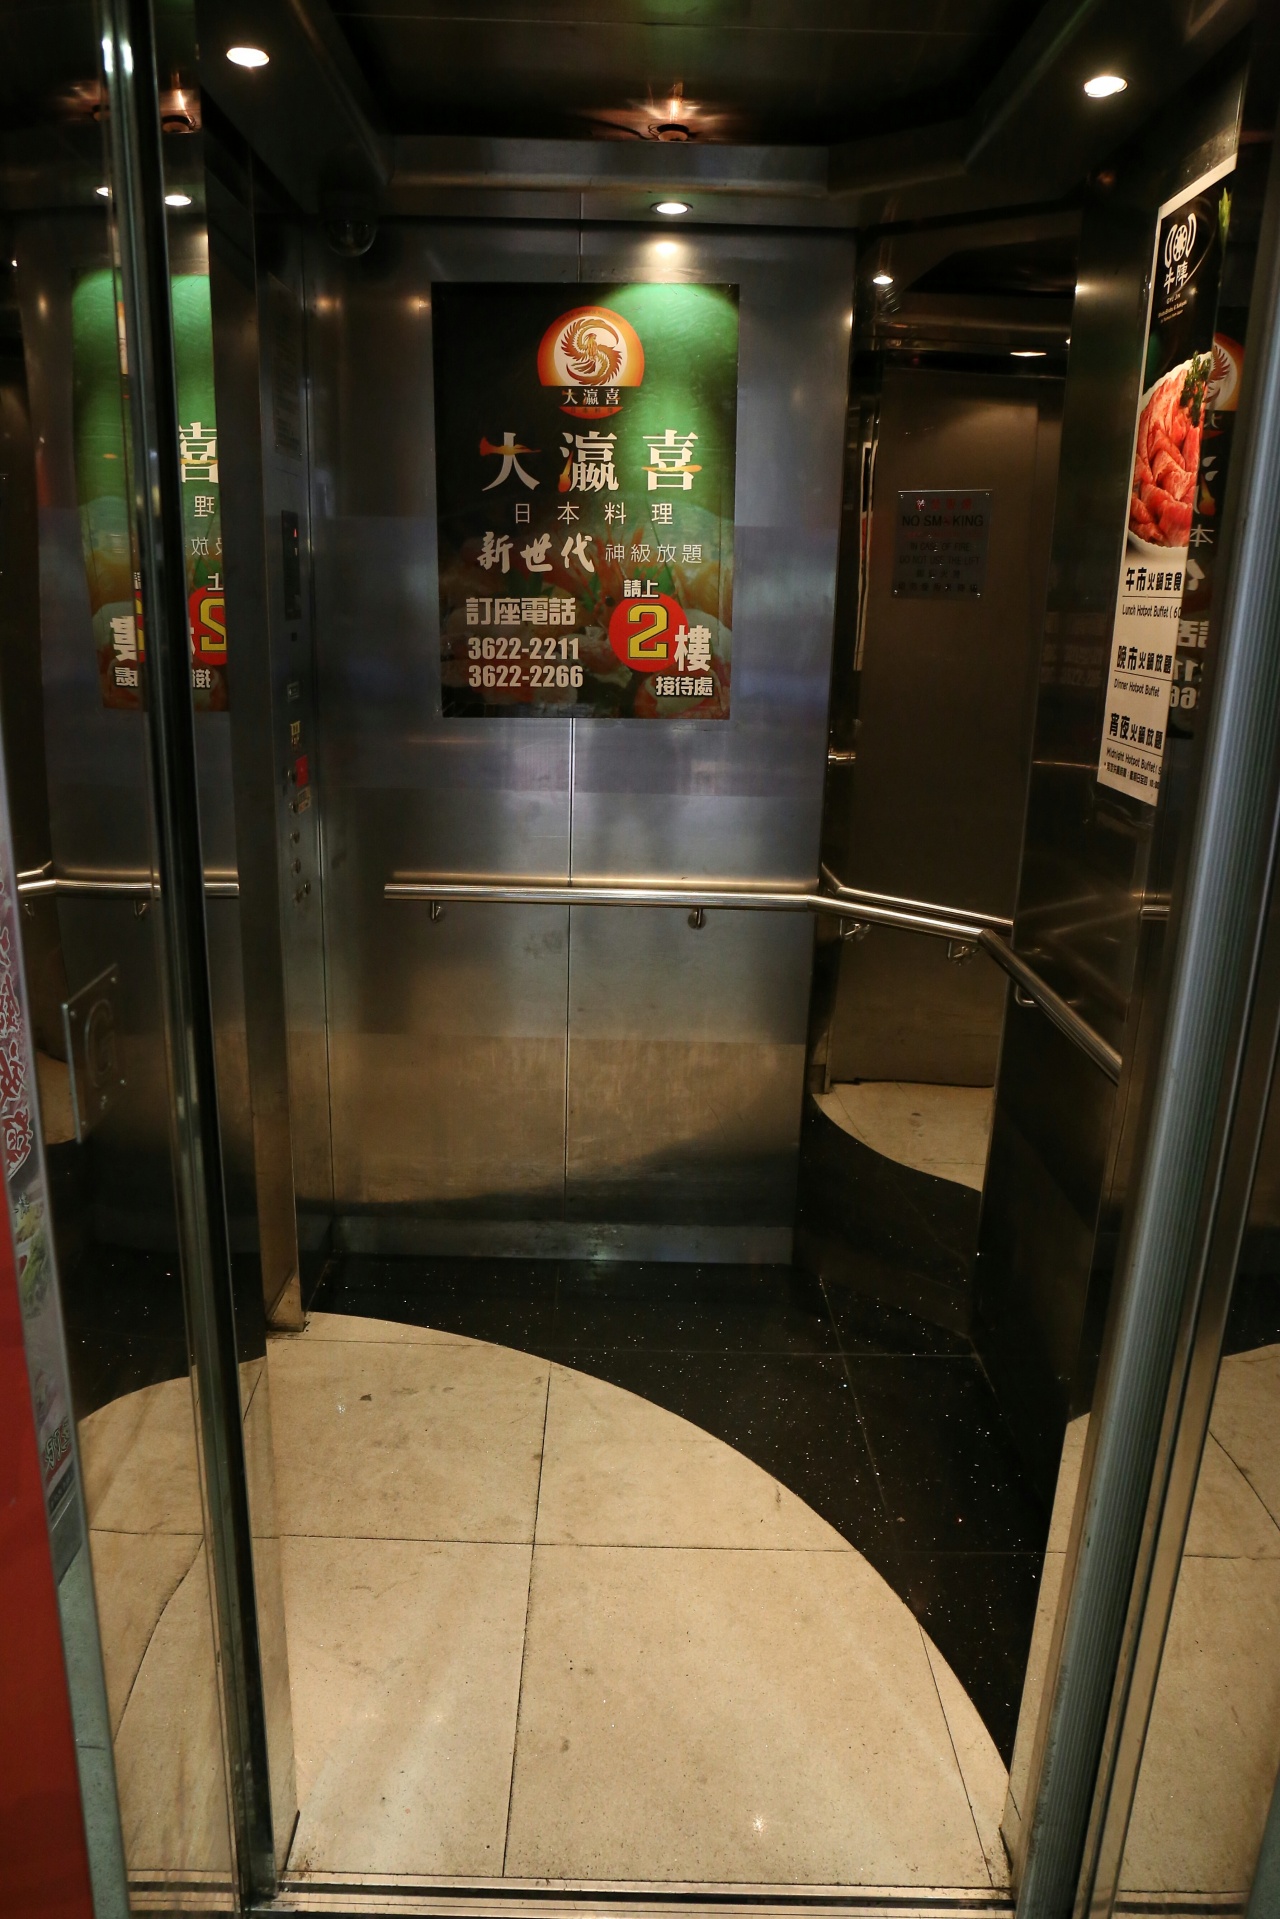 (BARU) Kebelet Pipis, Wanita Asal Hongkong Ini Jongkok dalam Lift